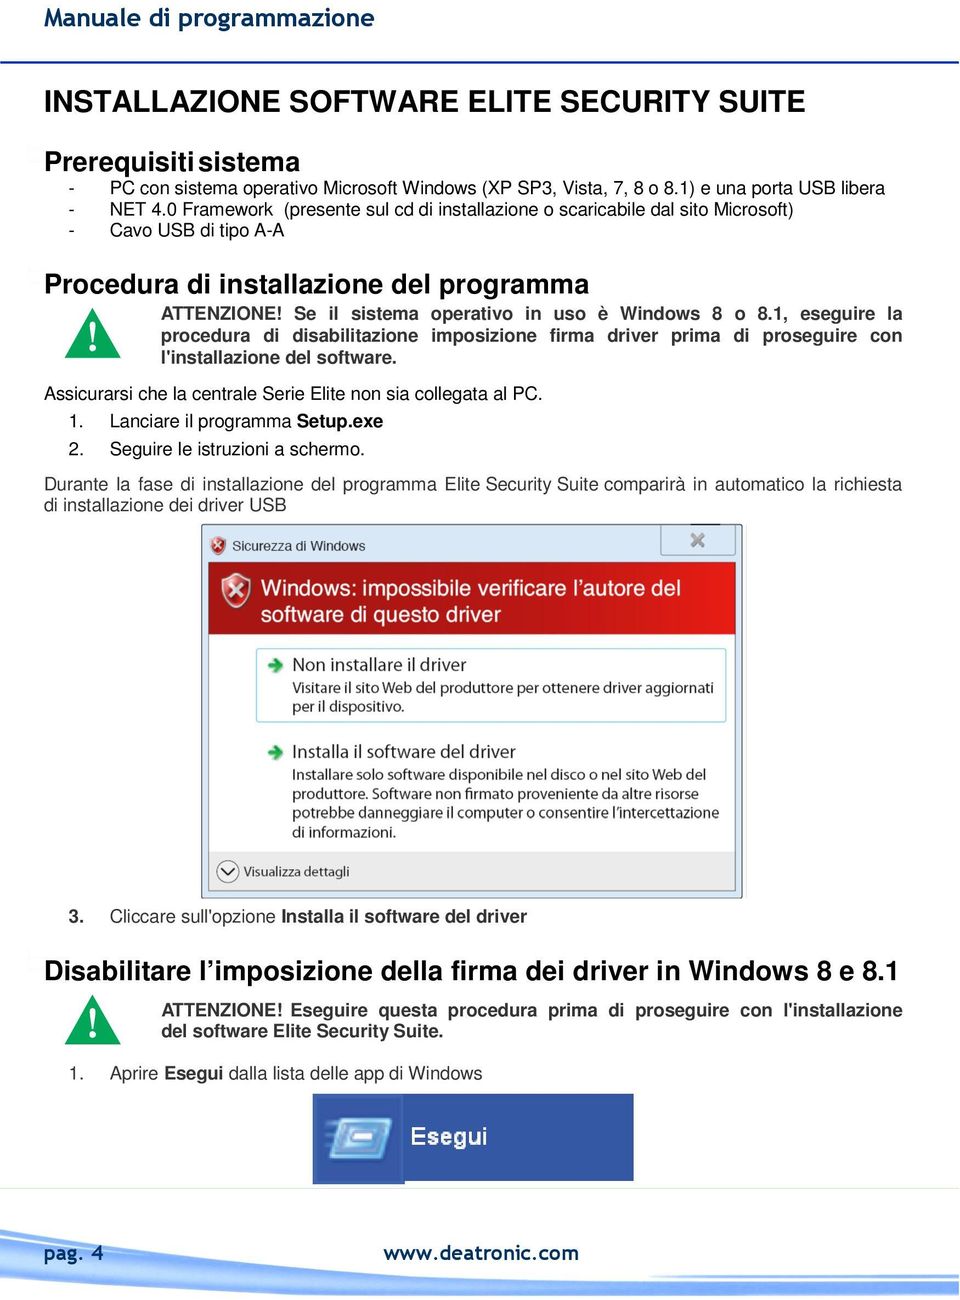 Se il sistema operativo in uso è Windows 8 o 8.1, eseguire la procedura di disabilitazione imposizione firma driver prima di proseguire con l'installazione del software.